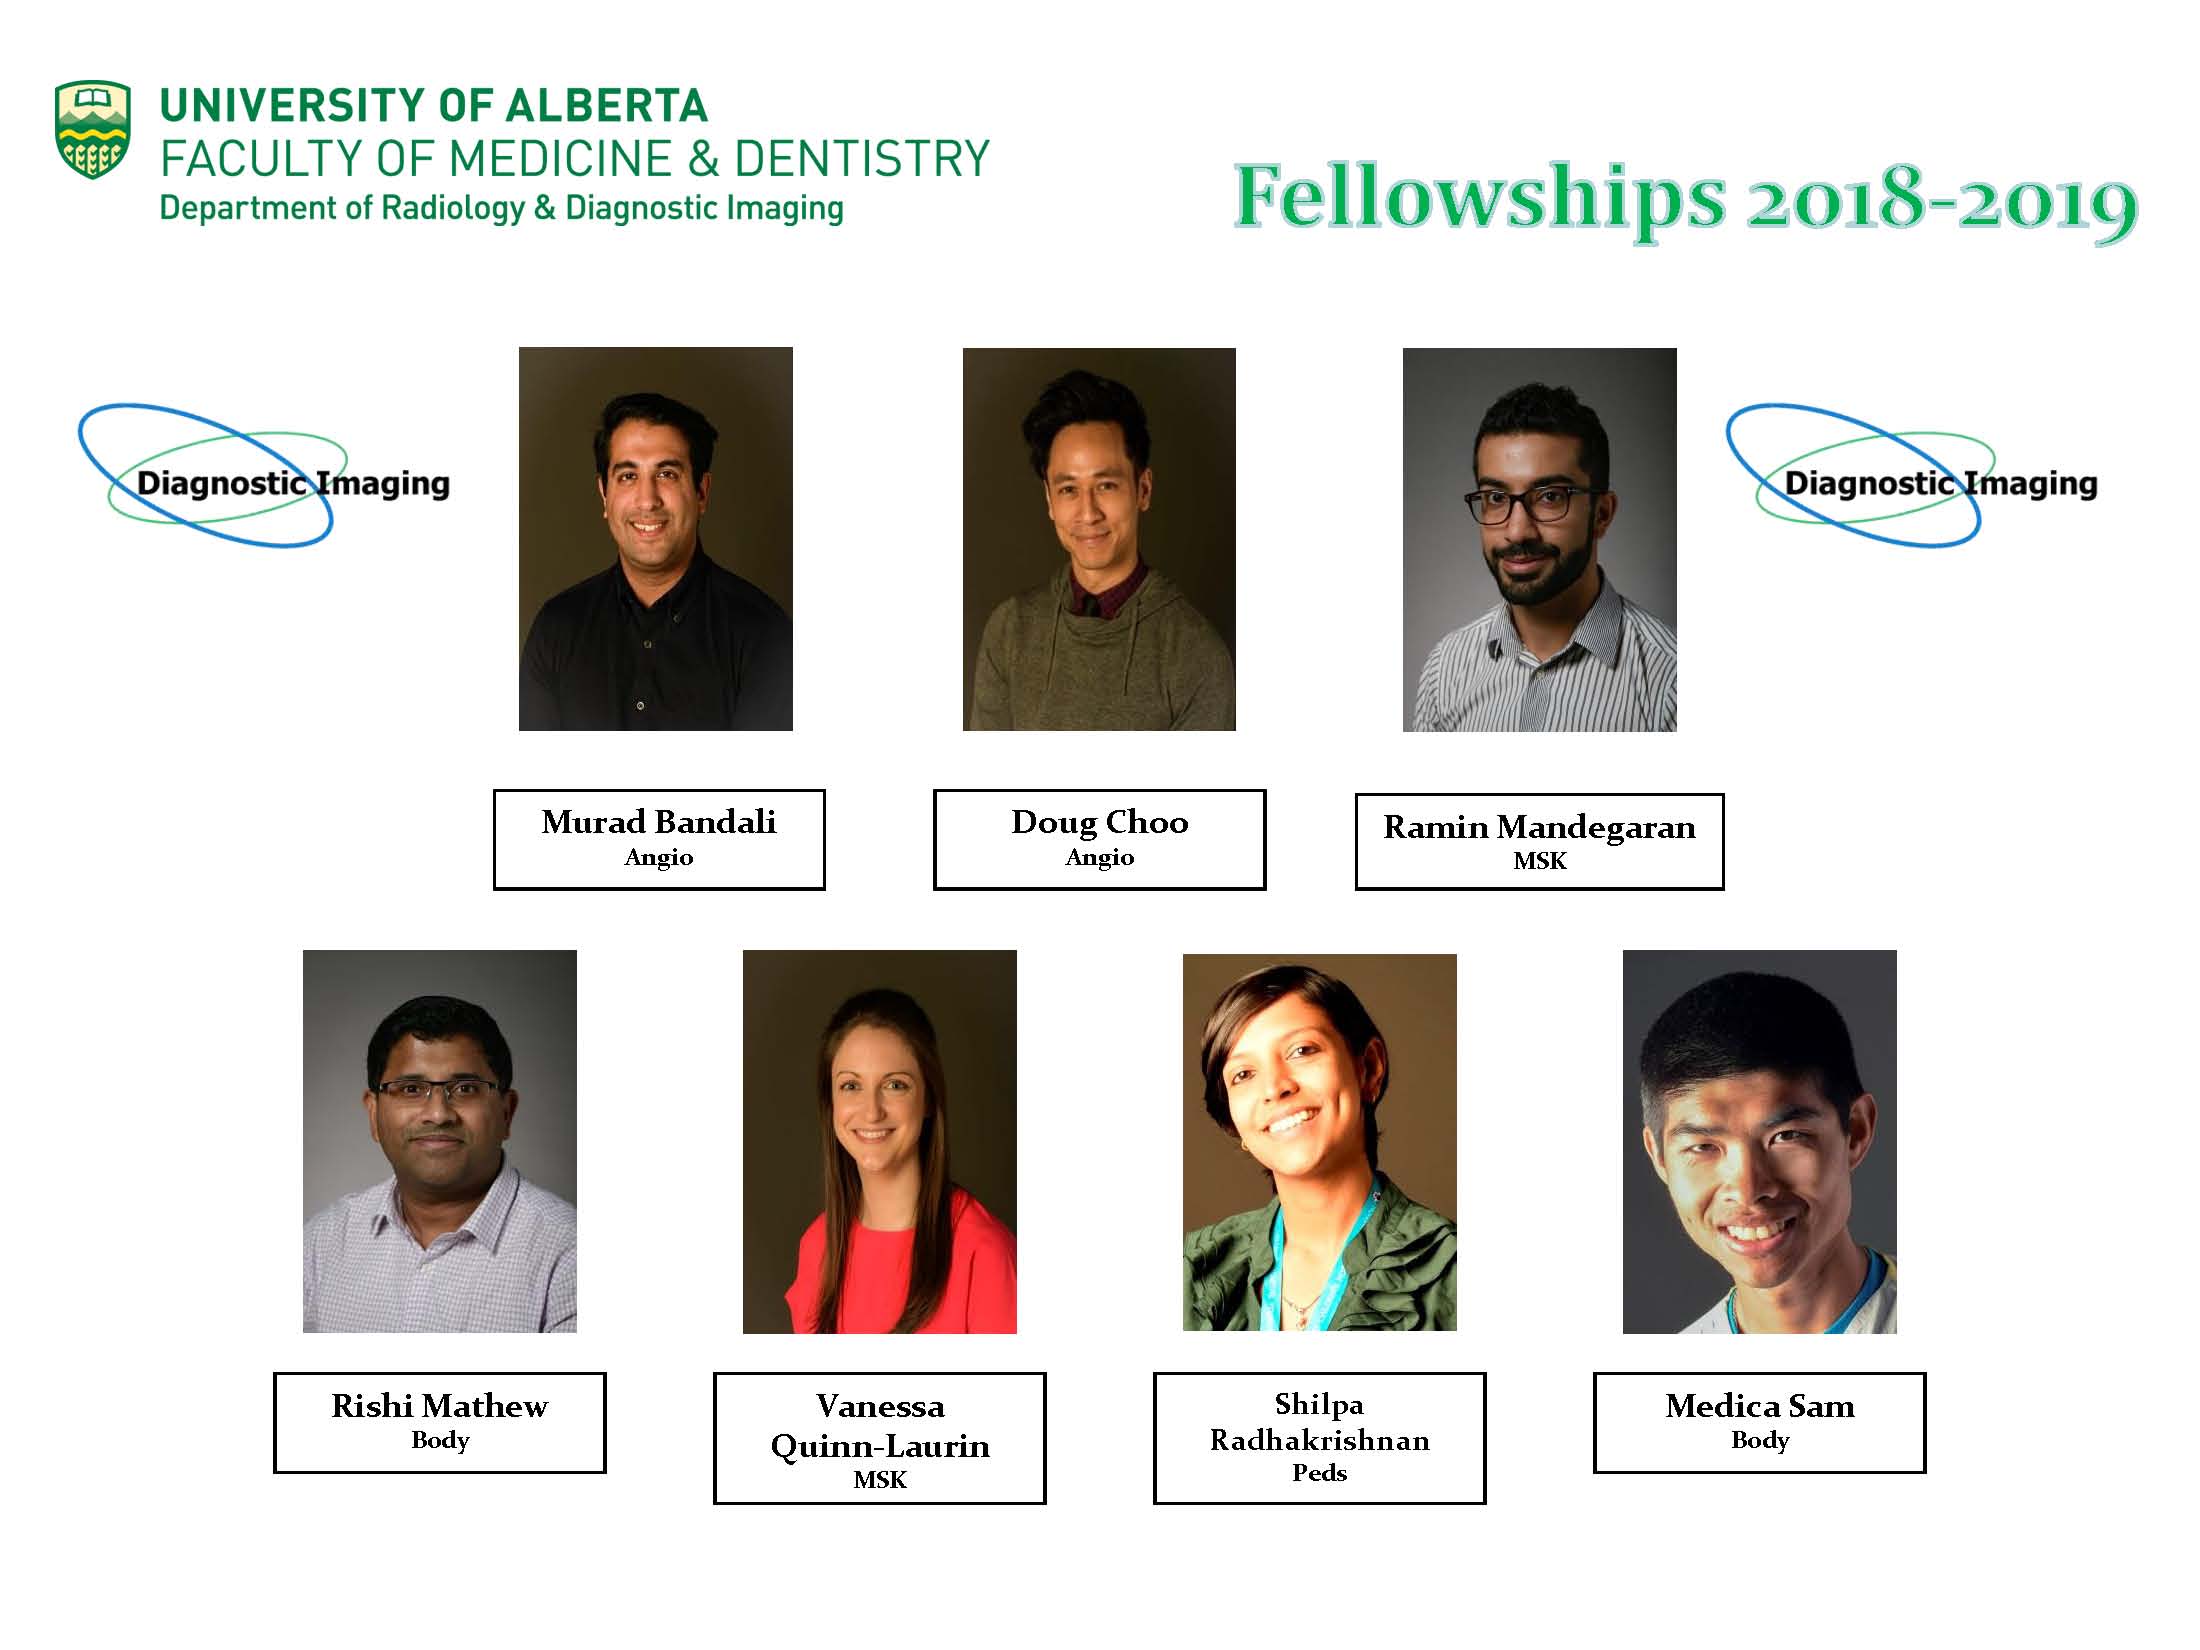 2018 Fellows